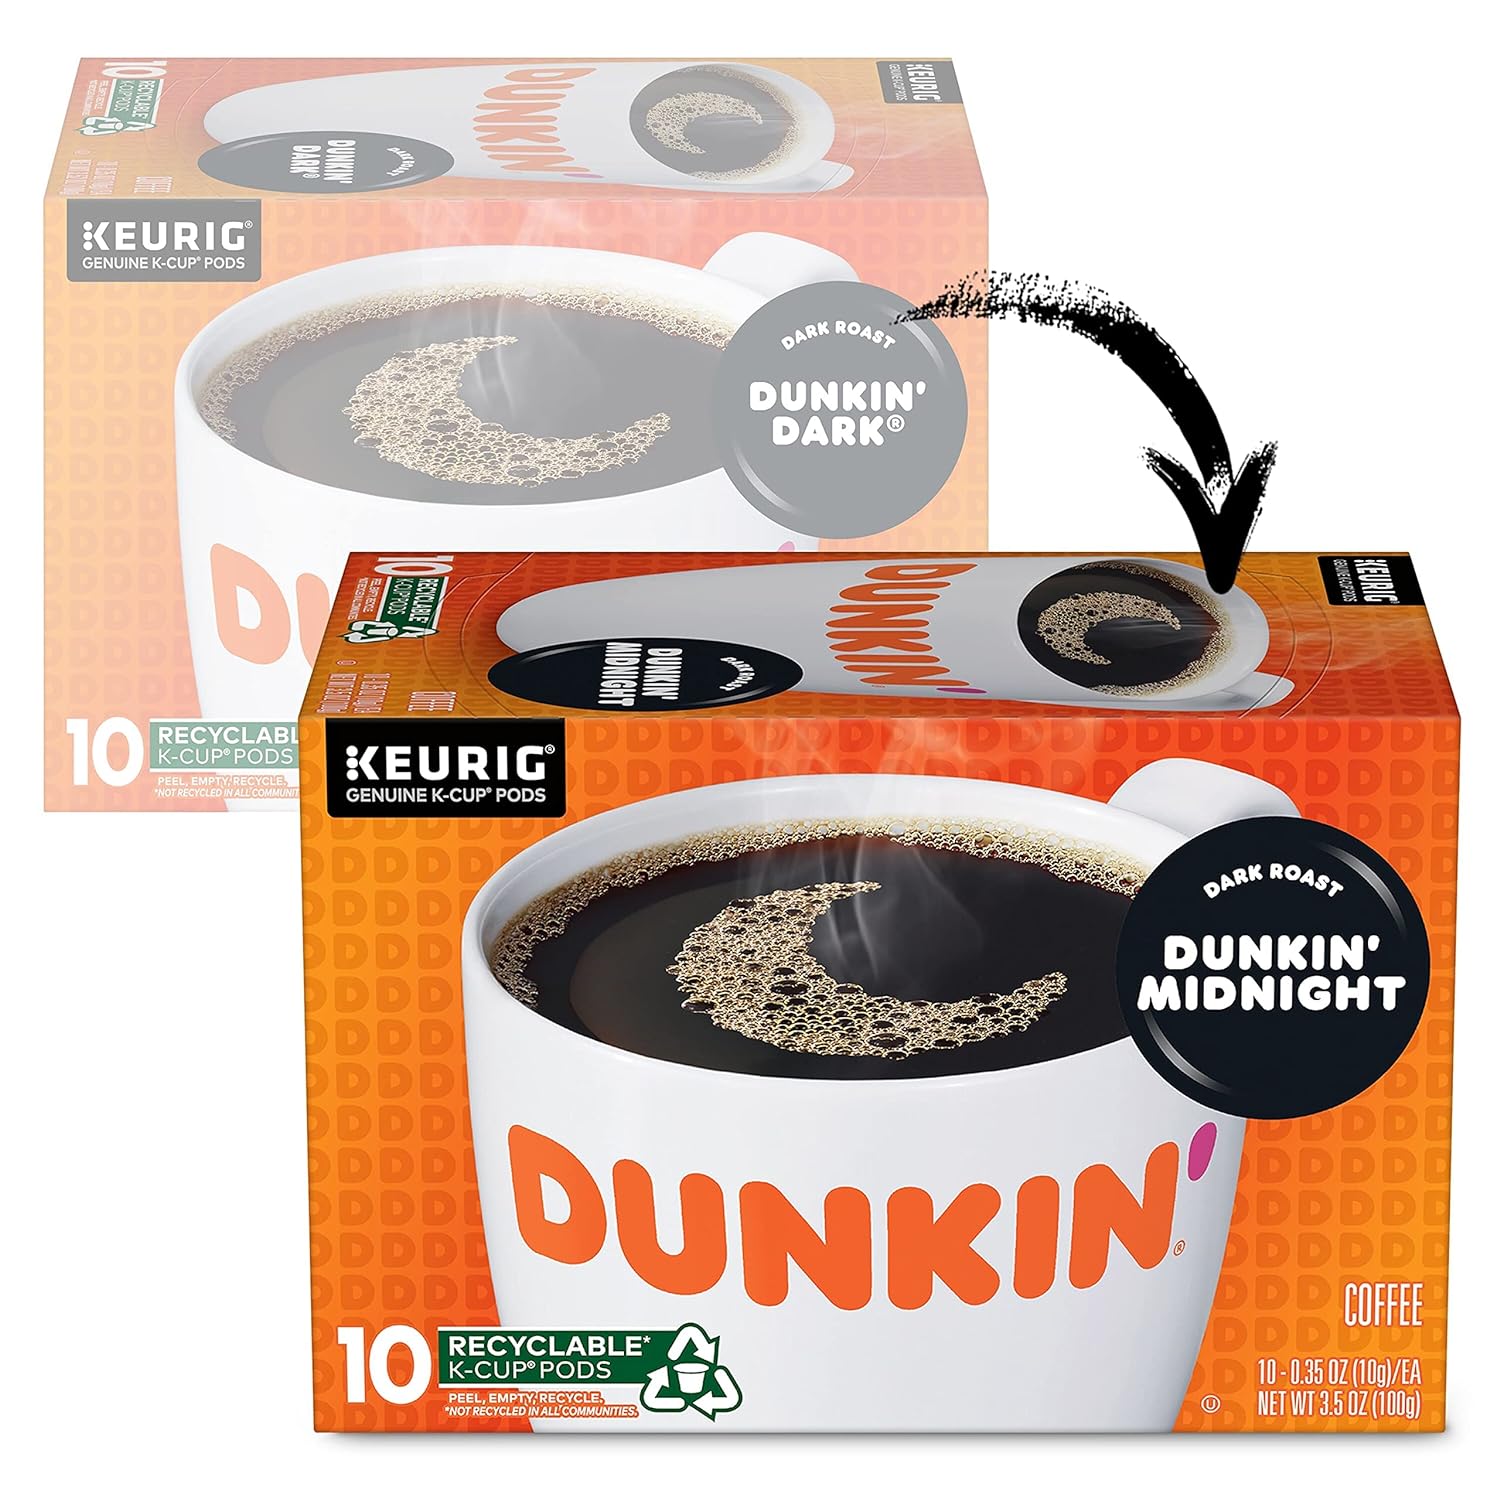 Dunkin' Midnight Dark Roast Coffee, 60 Keurig K-Cup Pods